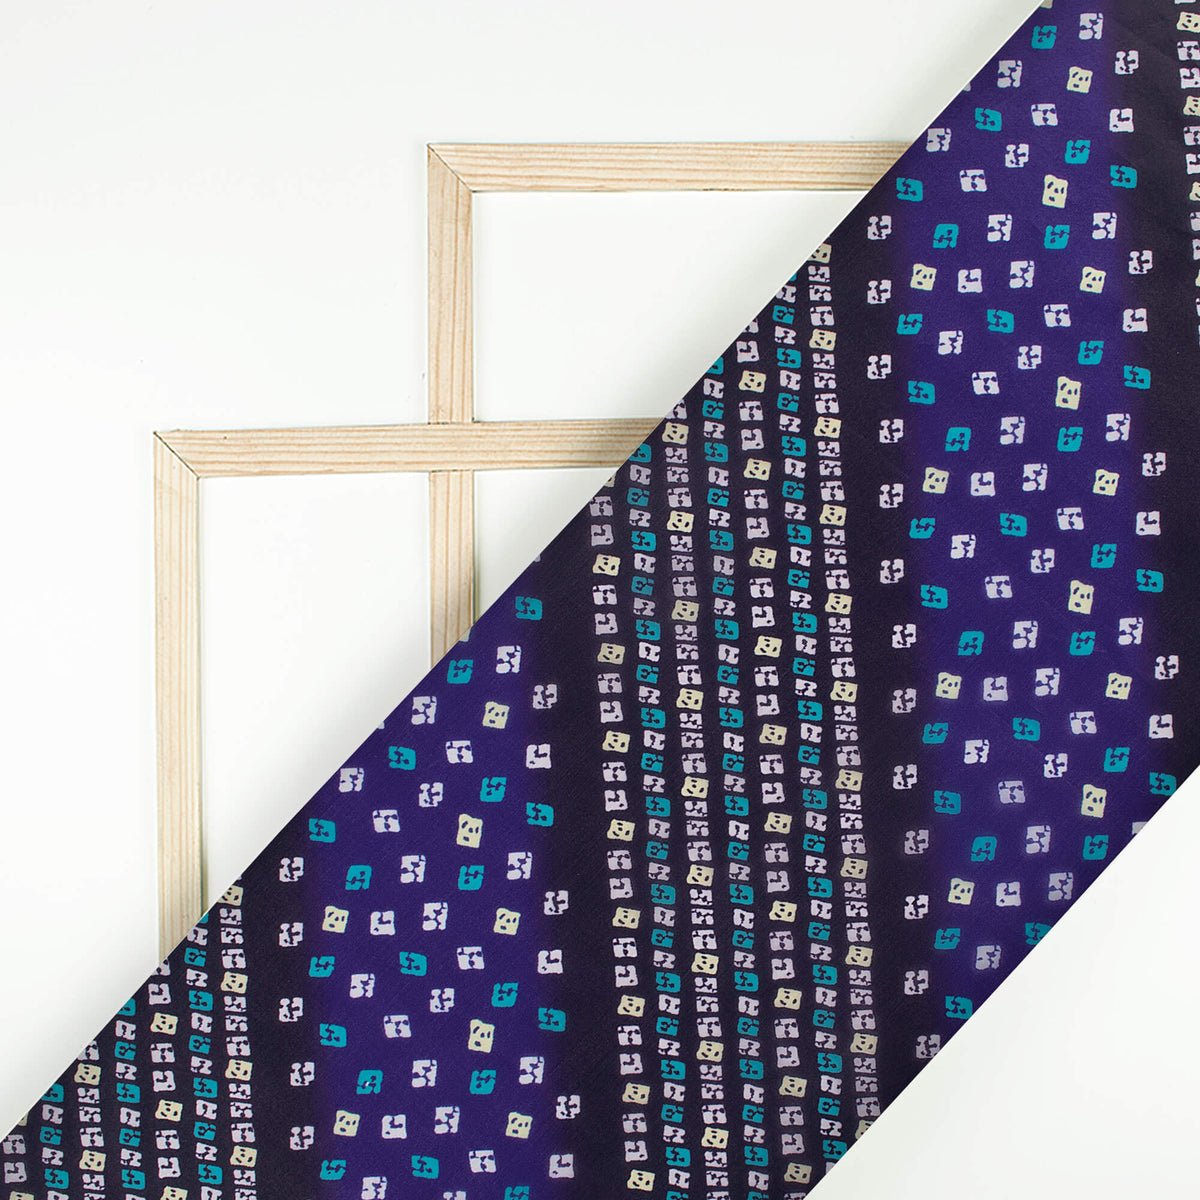 Royal Blue And Black Bandhani Pattern Digital Print Organza Satin Fabric